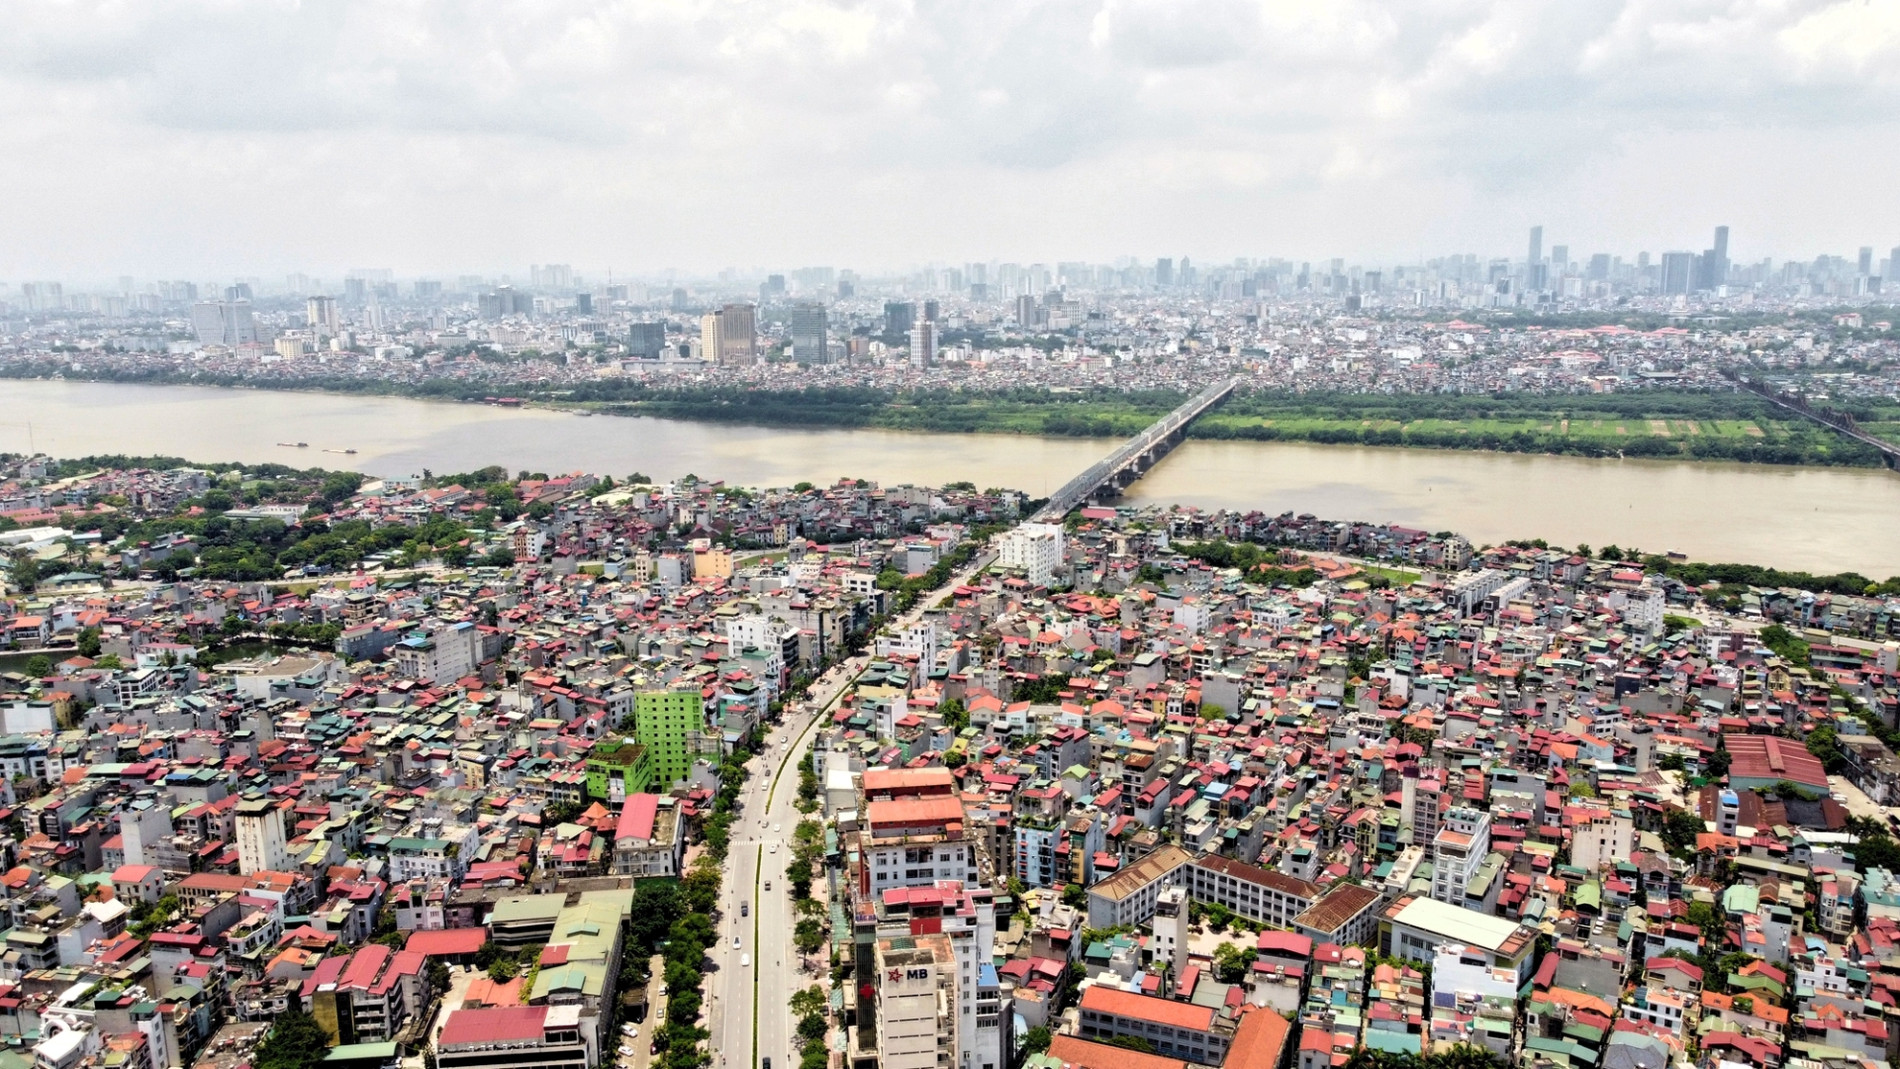 Quy hoạch đô thị ven sông như Paris, London, Thượng Hải: Lấy việc làm sạch nước và điều tiết dòng chảy làm nền móng